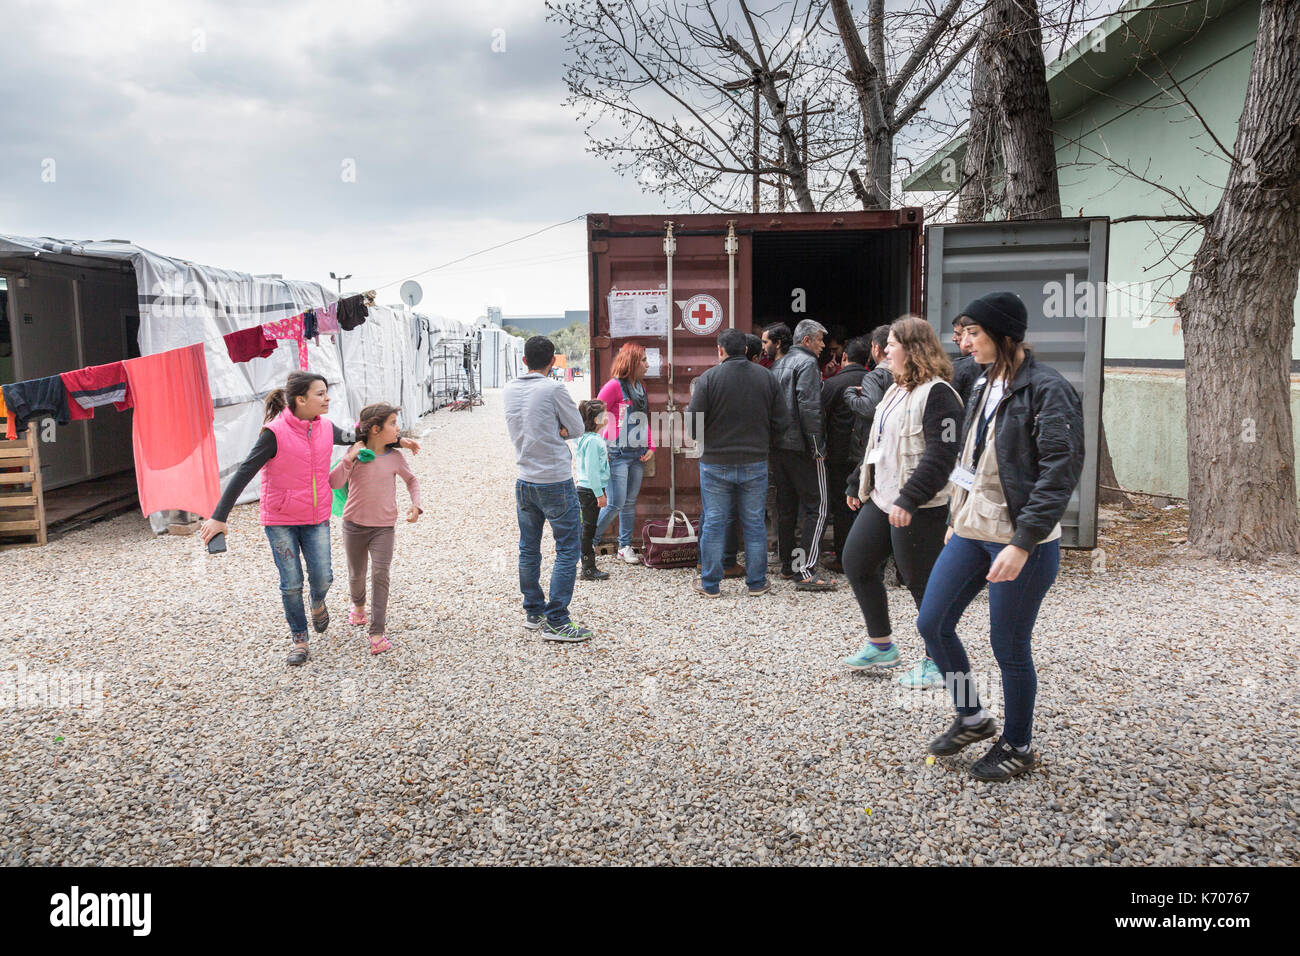 Al ritsona Refugee Camp in Grecia, gli uomini si riuniscono da un contenitore di spedizione, utilizzato come ufficio e centro di distribuzione dalla Croce Rossa Greca. Foto Stock